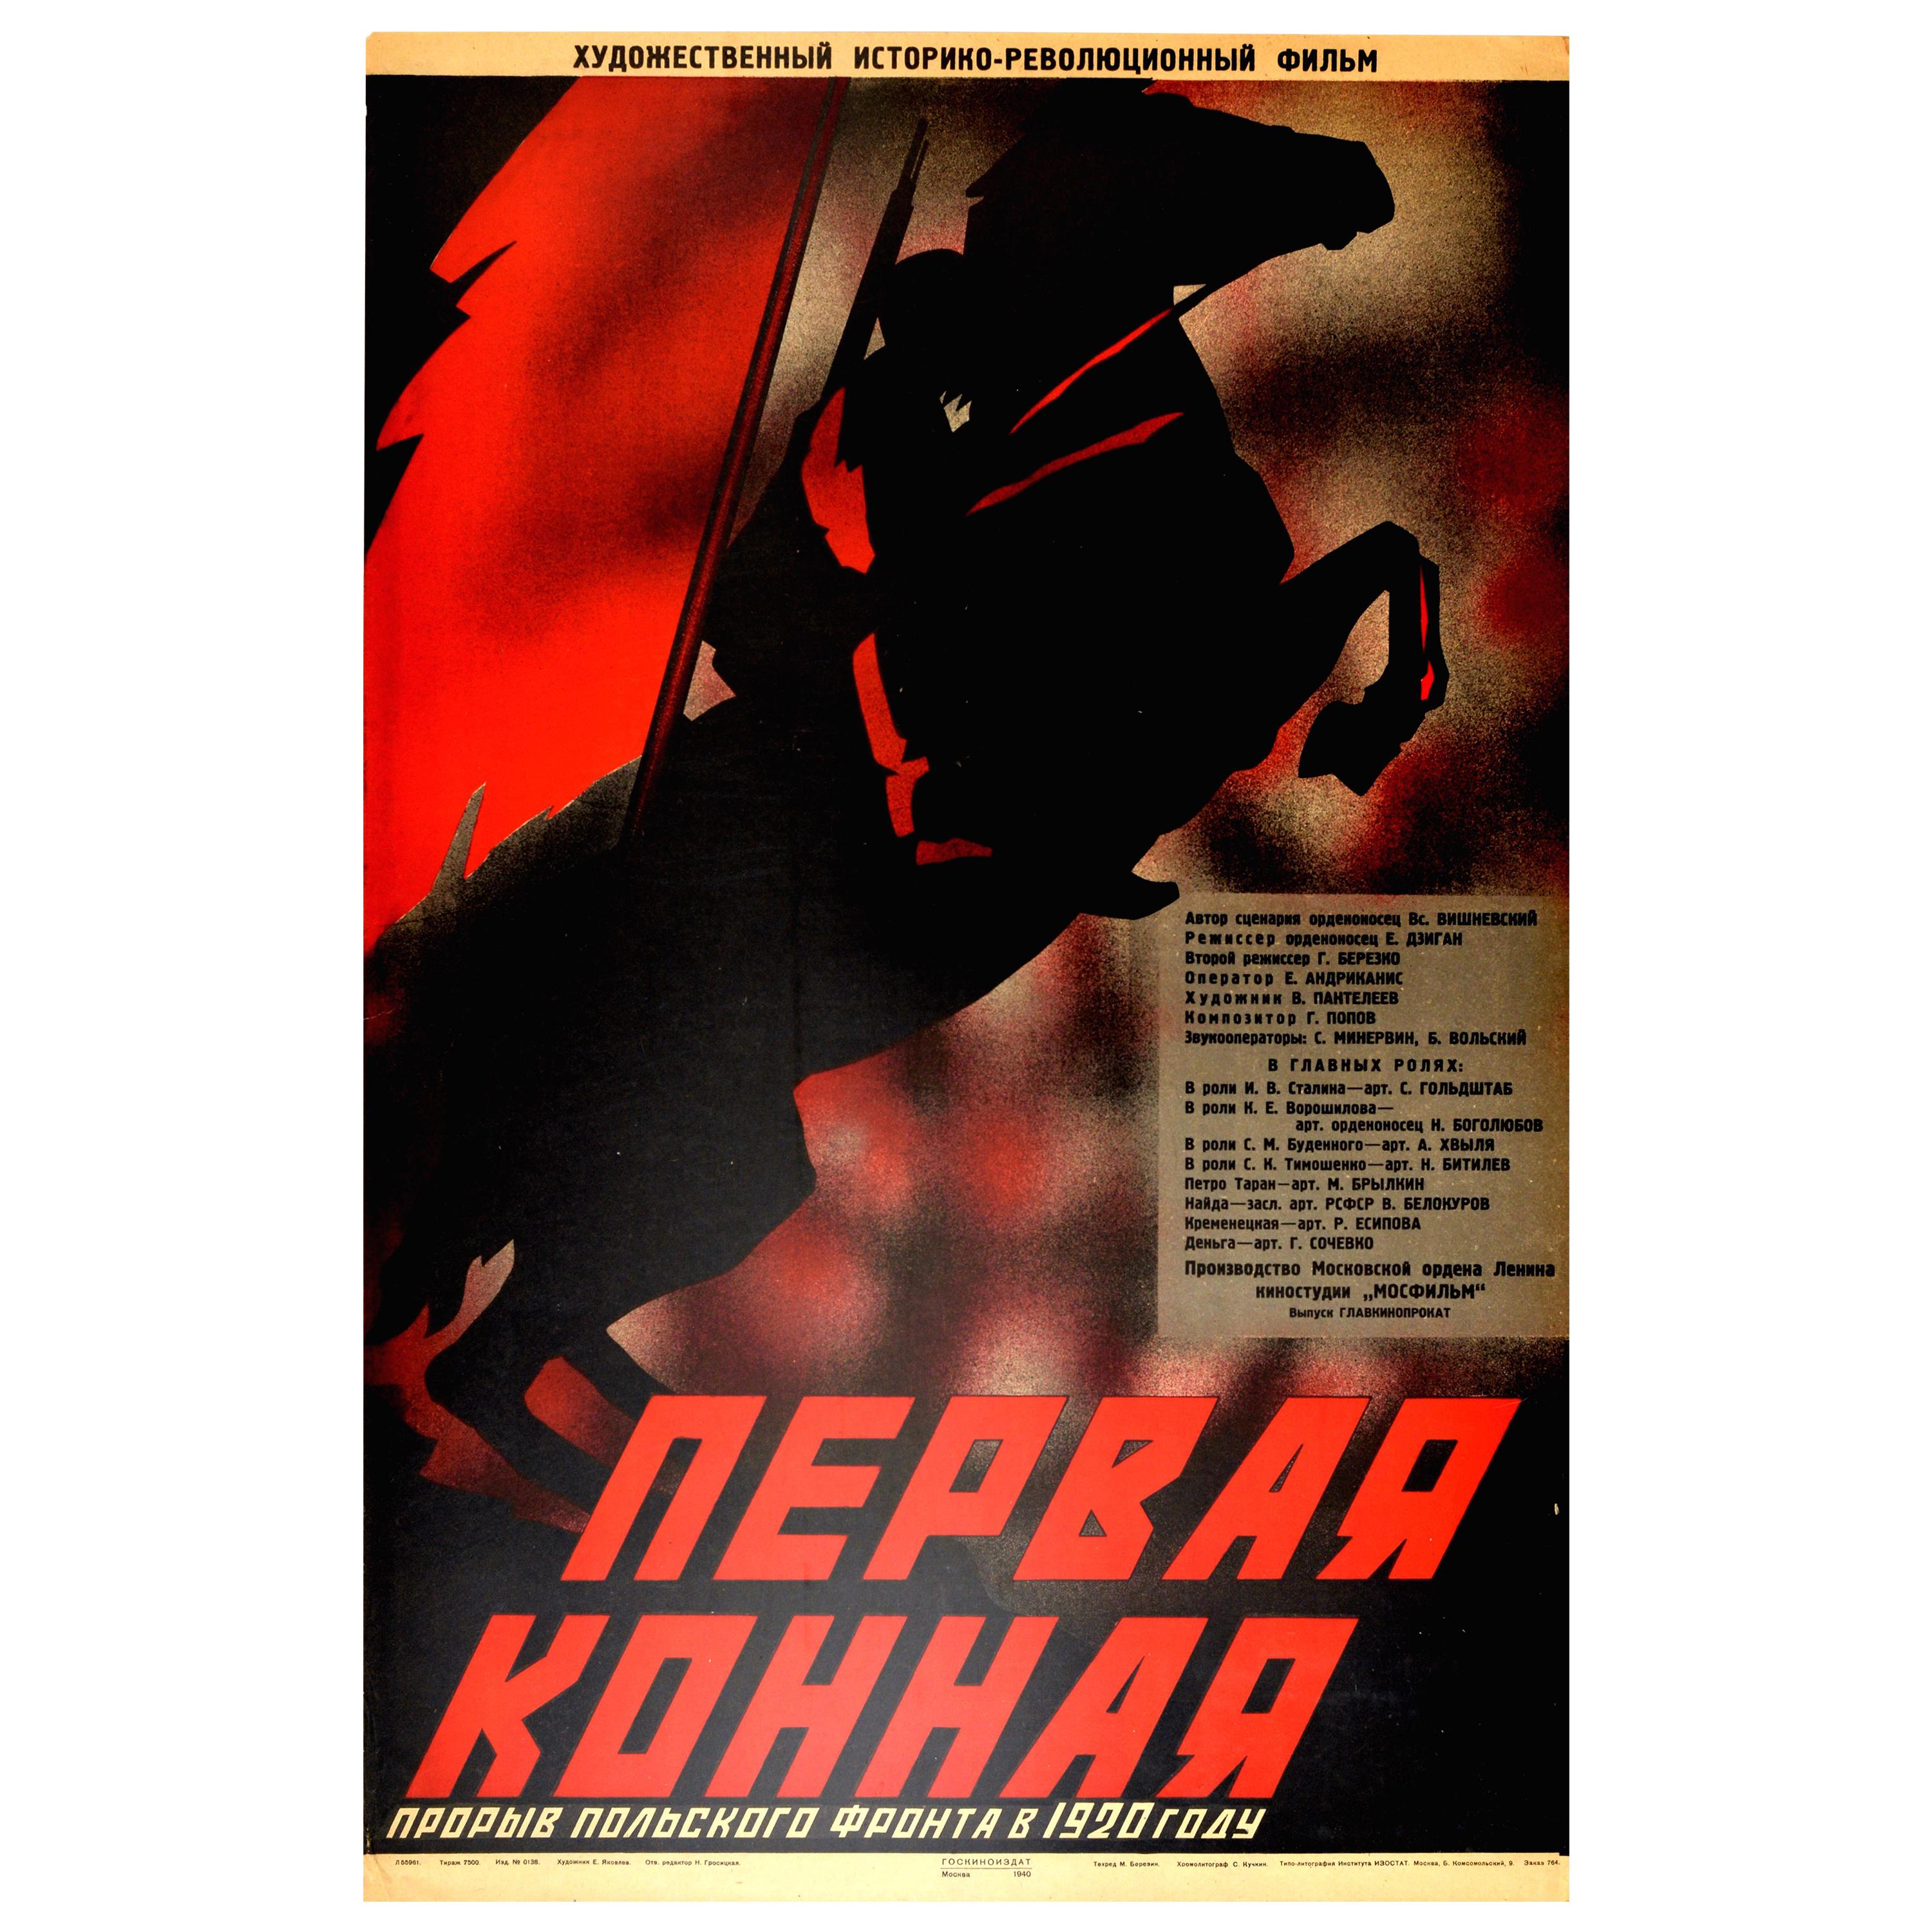 Original Vintage Poster First Mounted Division Civil War Drama Film Horse Design For Sale